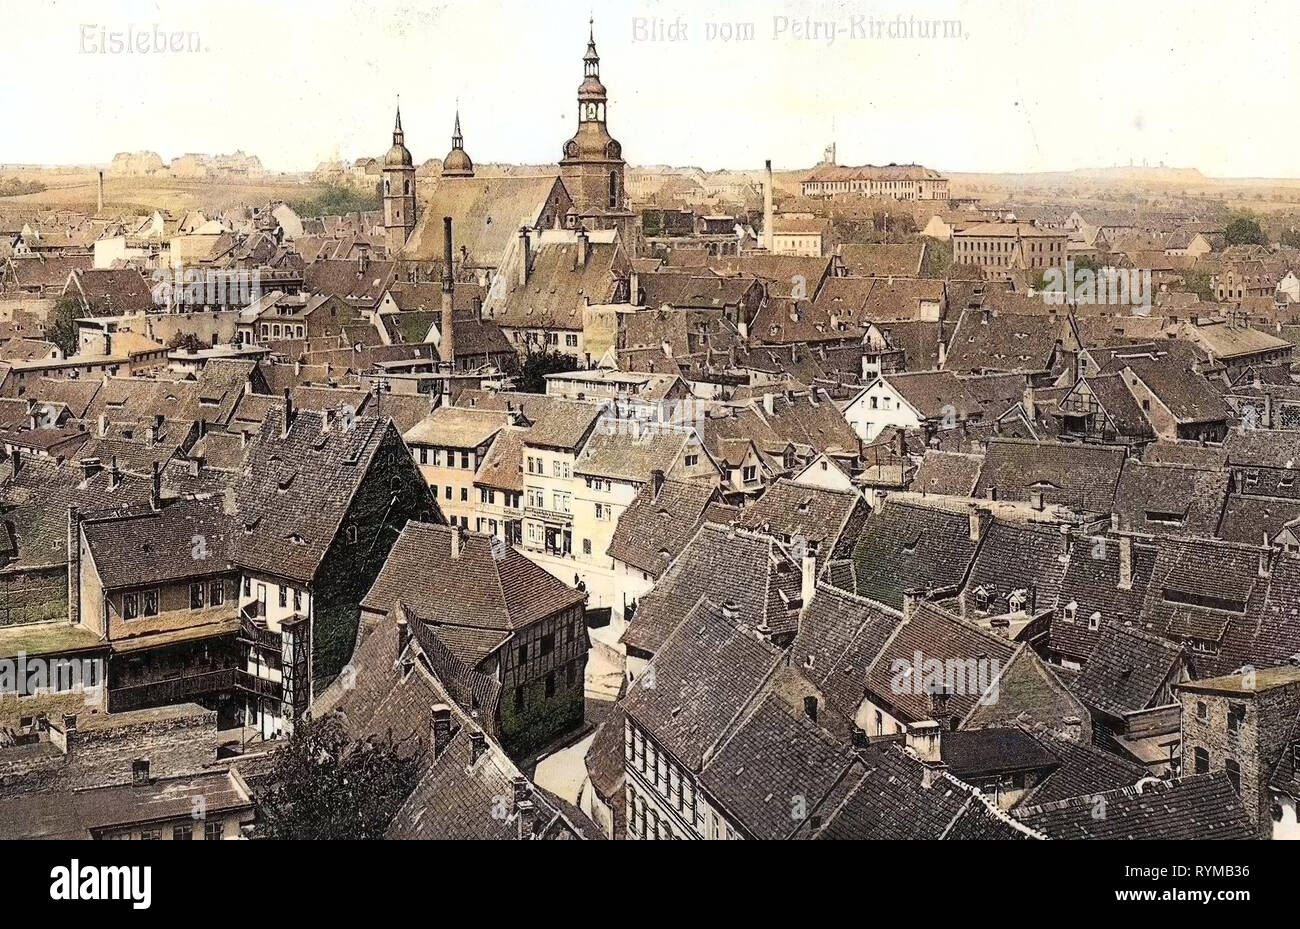 Églises à Eisleben, bâtiments en Eisleben, 1905, Saxe-Anhalt, Berlin, Stadt vom Petry, Kirchturm, Allemagne Banque D'Images